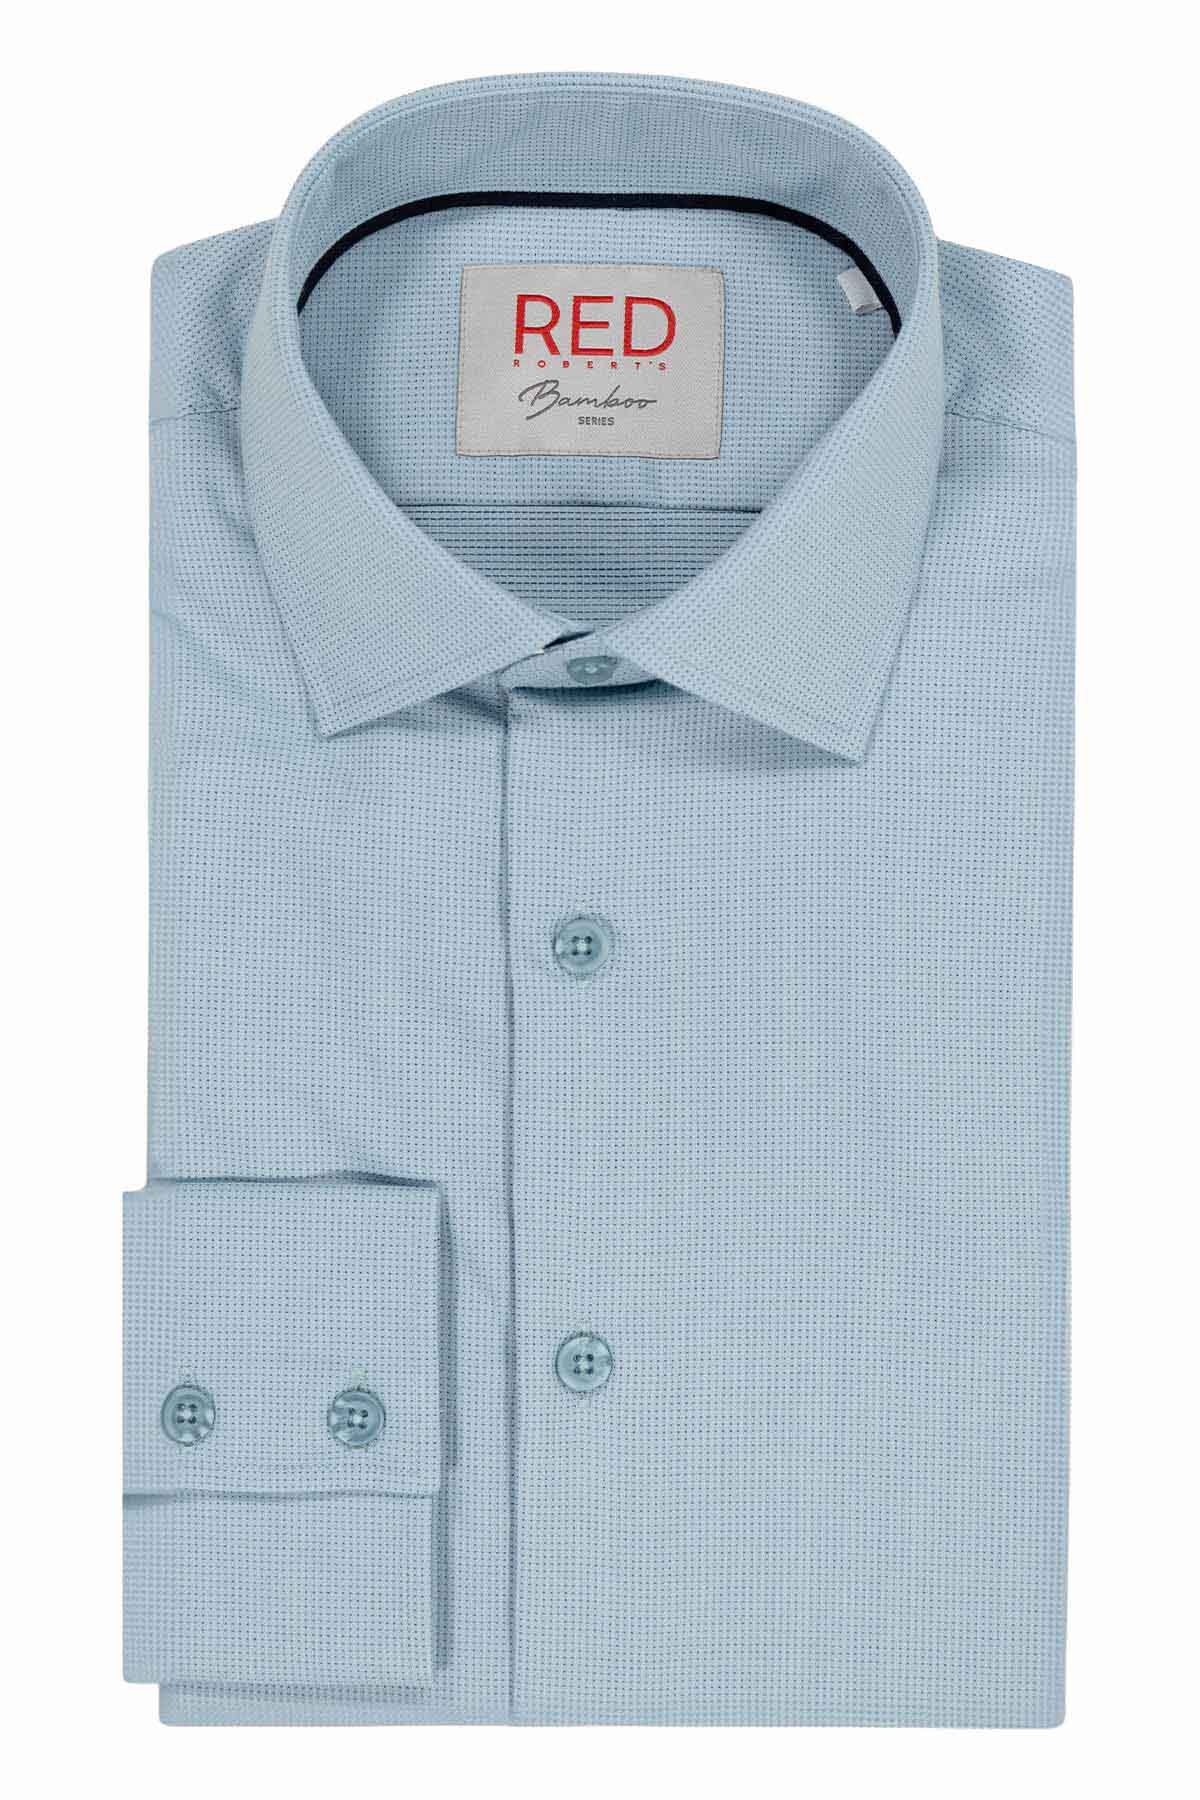 Camisa Vestir BAMBOO Roberts Red Vintage Slim Fit